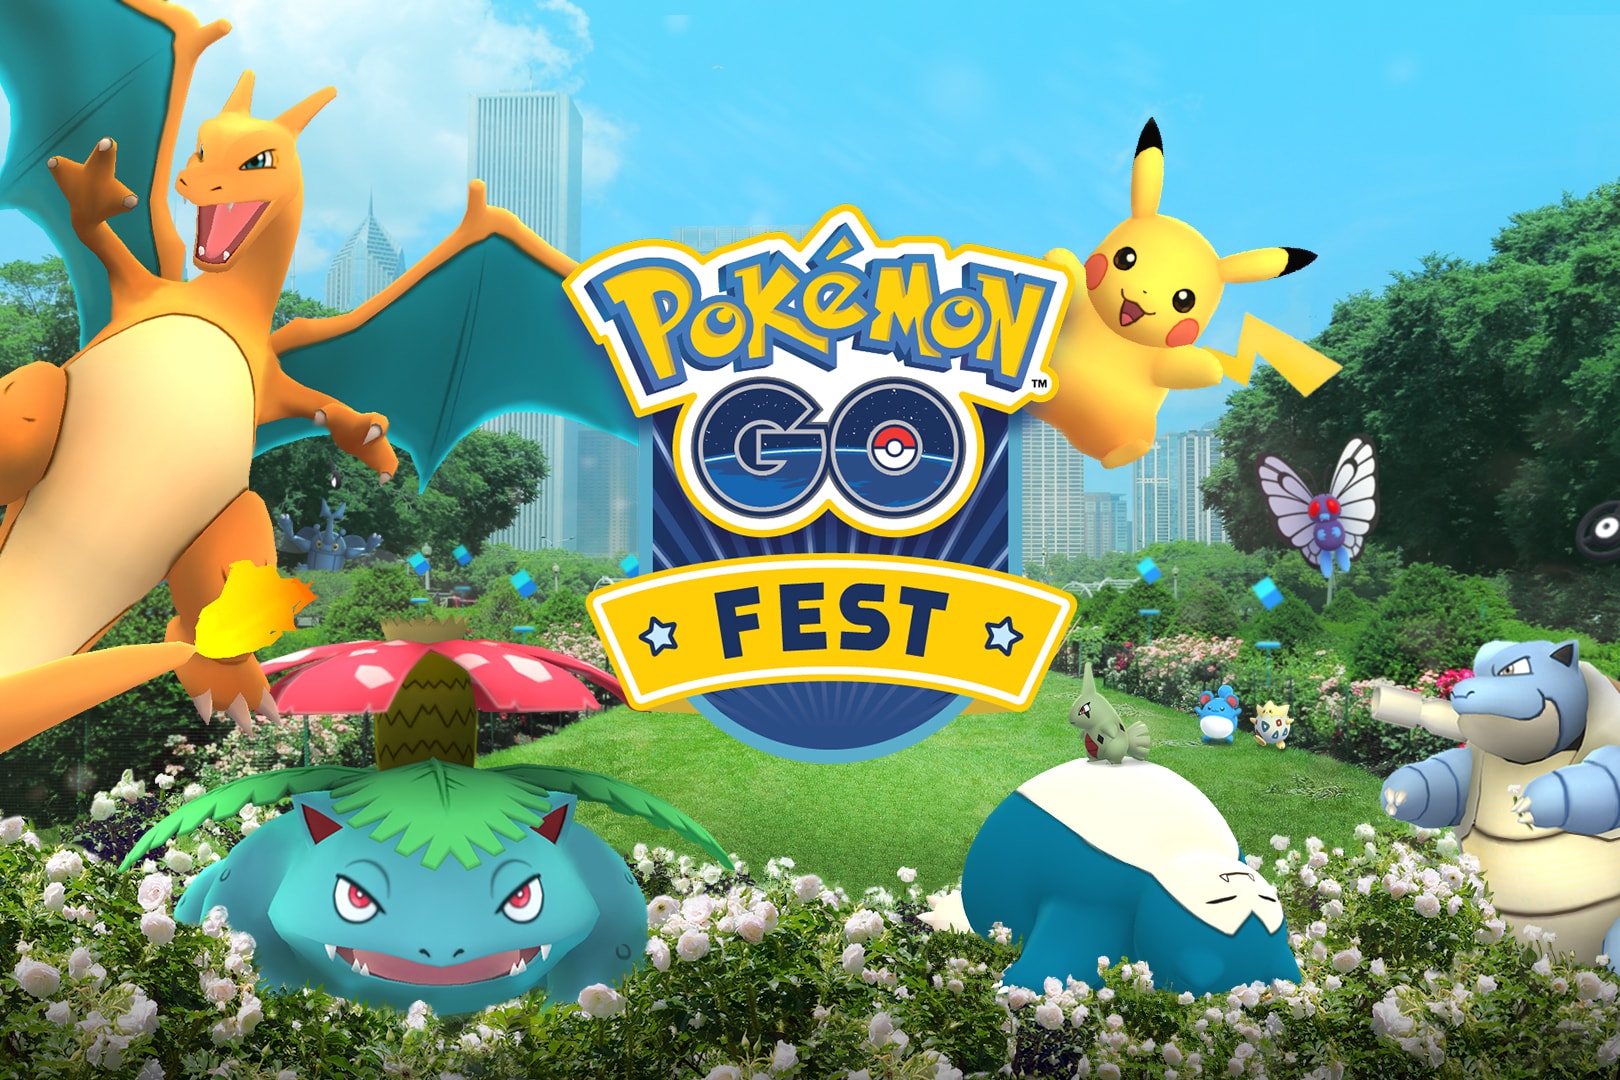 Pokemon GO Fest Chicago First Anniversary